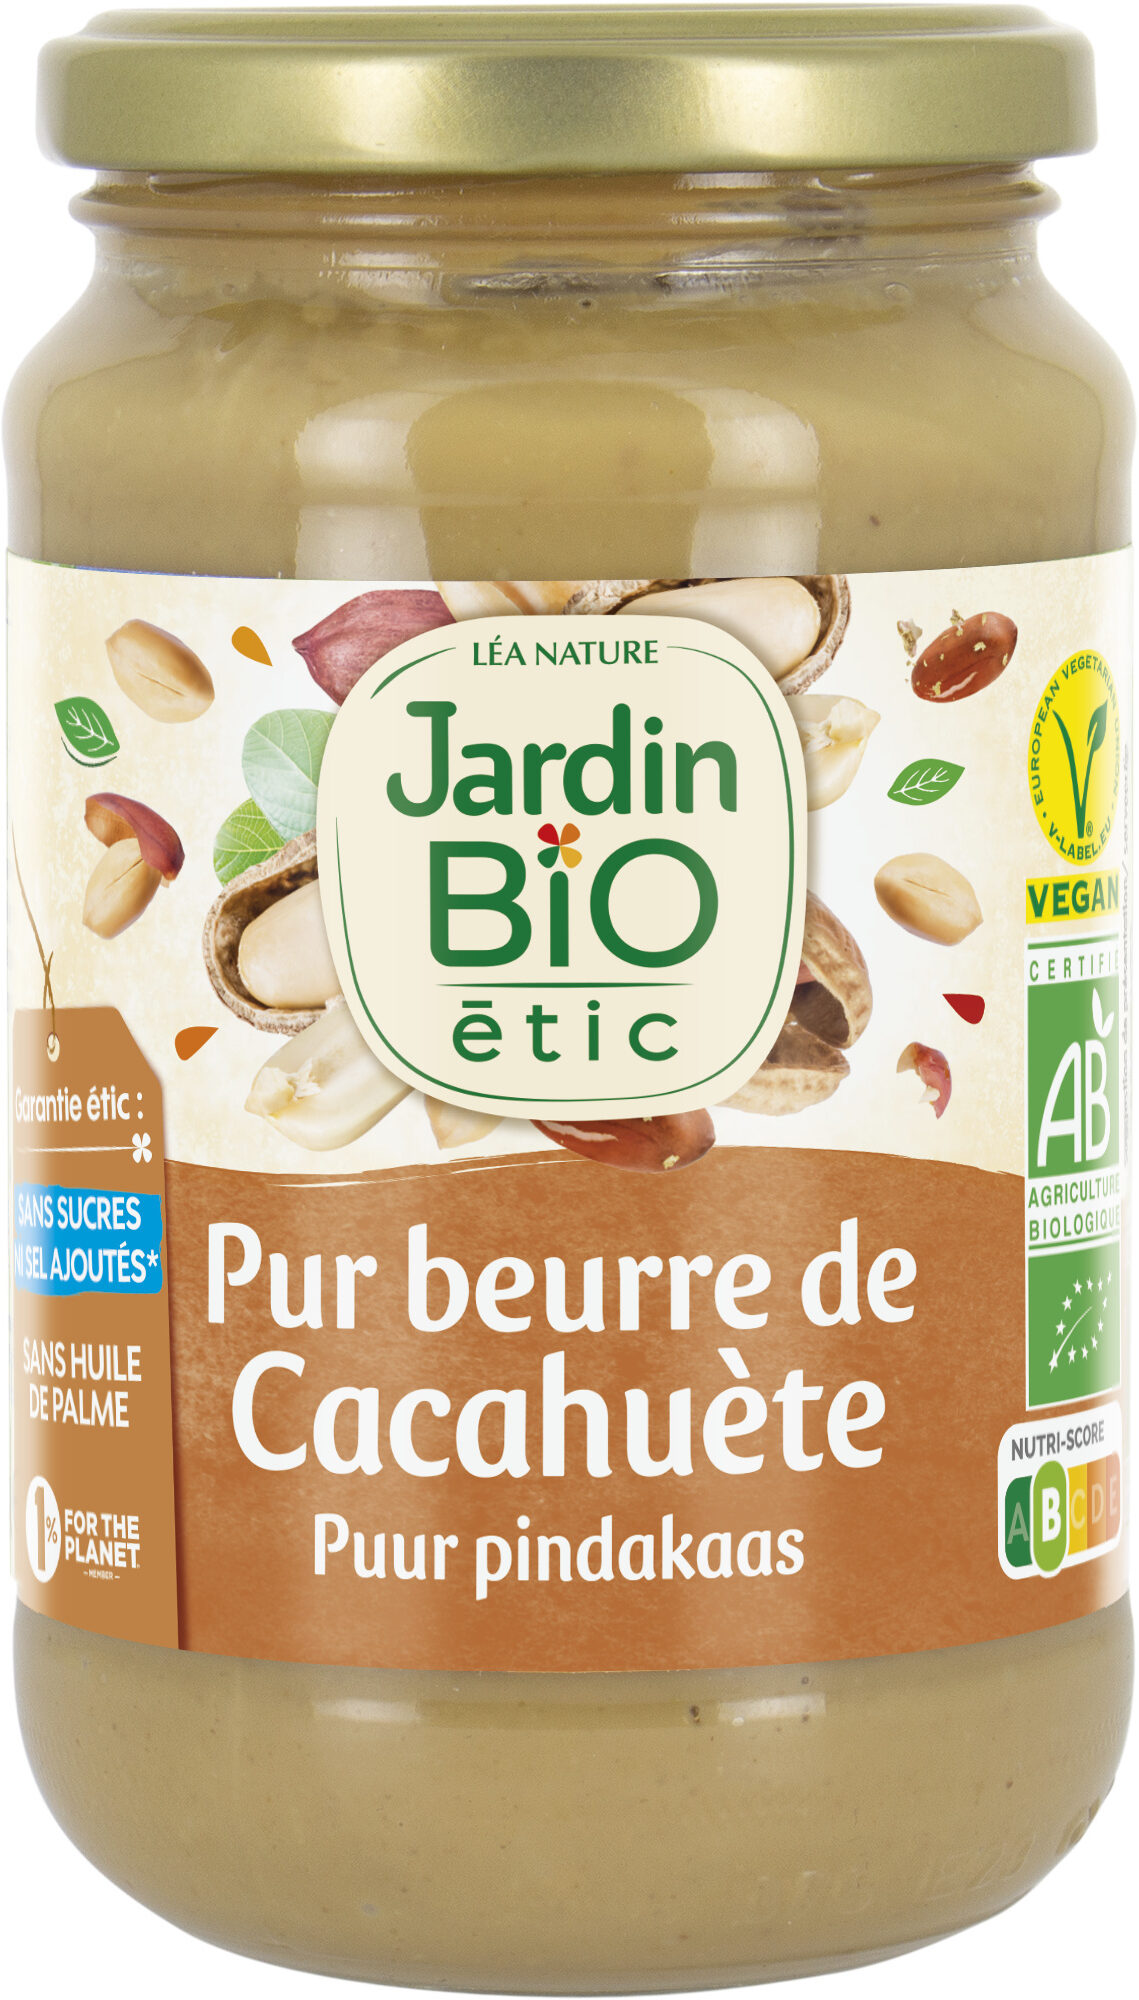 Pur beurre de cacahuète - Produkt - fr